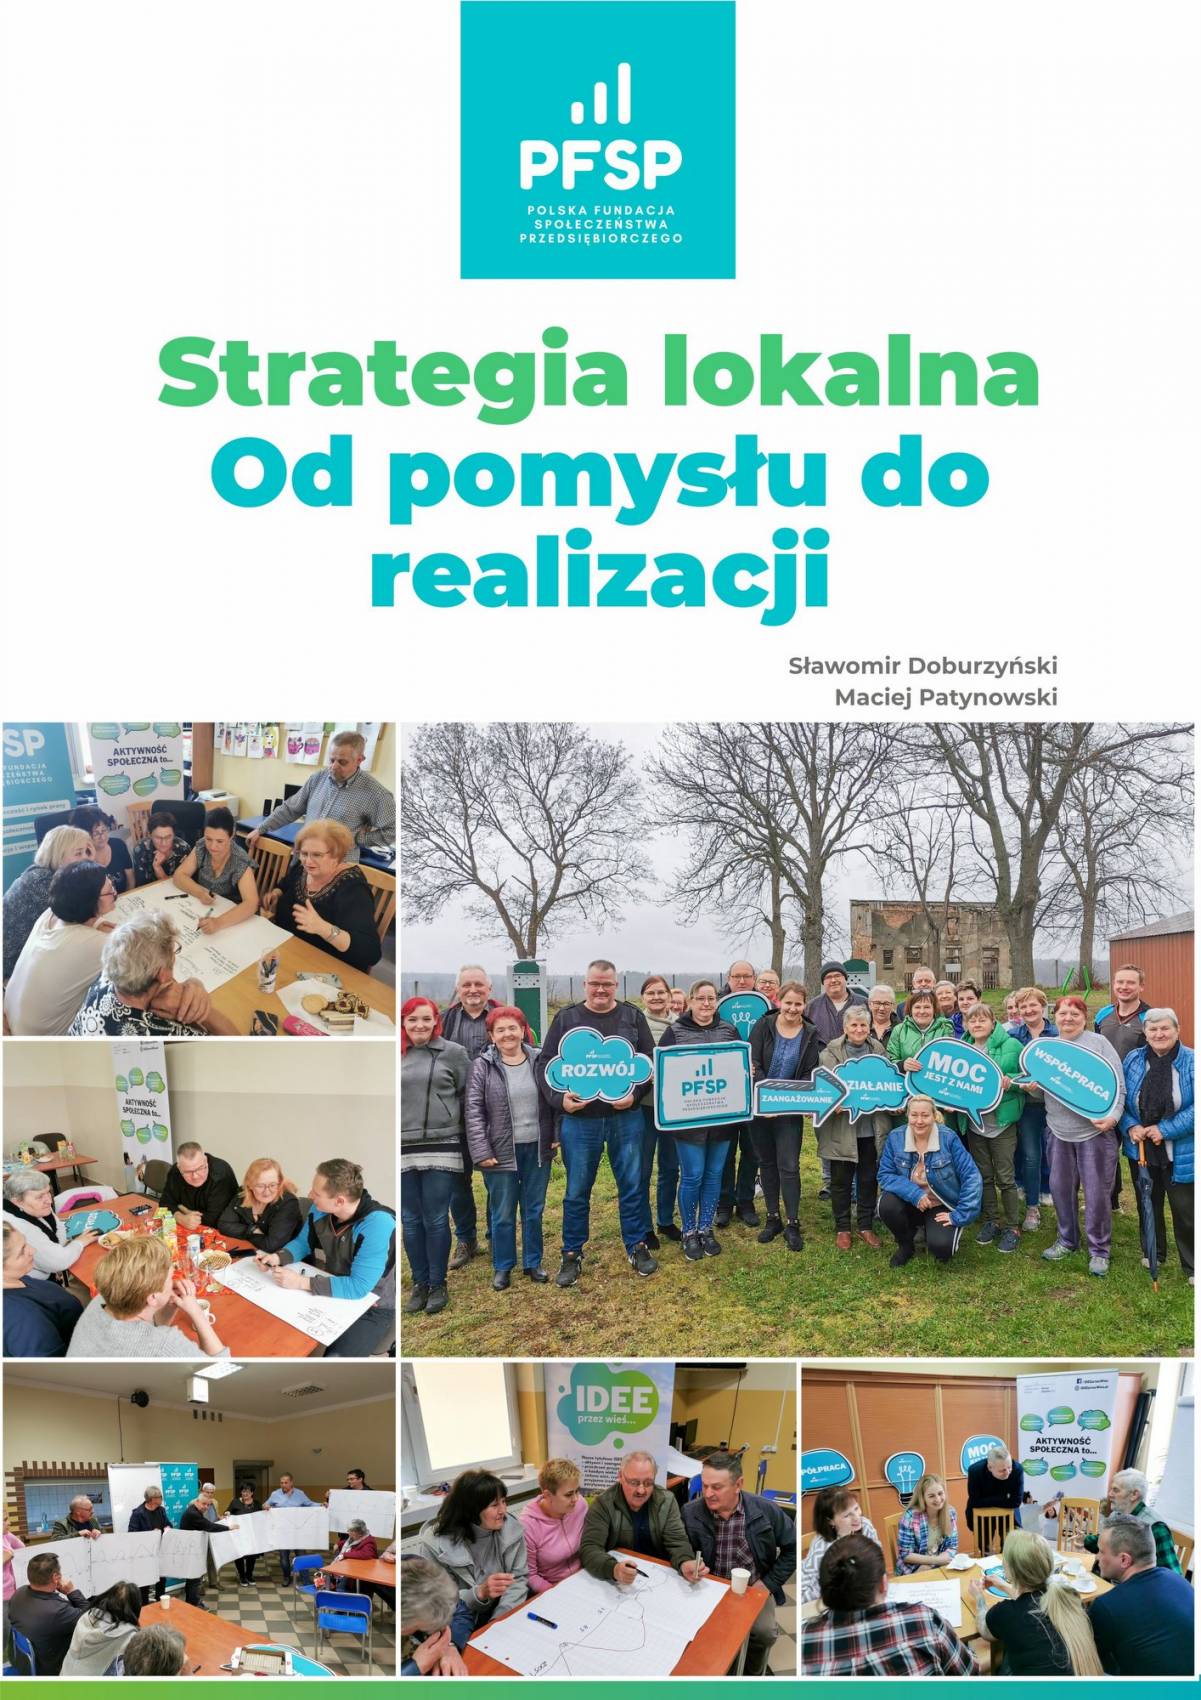 OKLADKA_STRATEGIA_LOKALNAprz